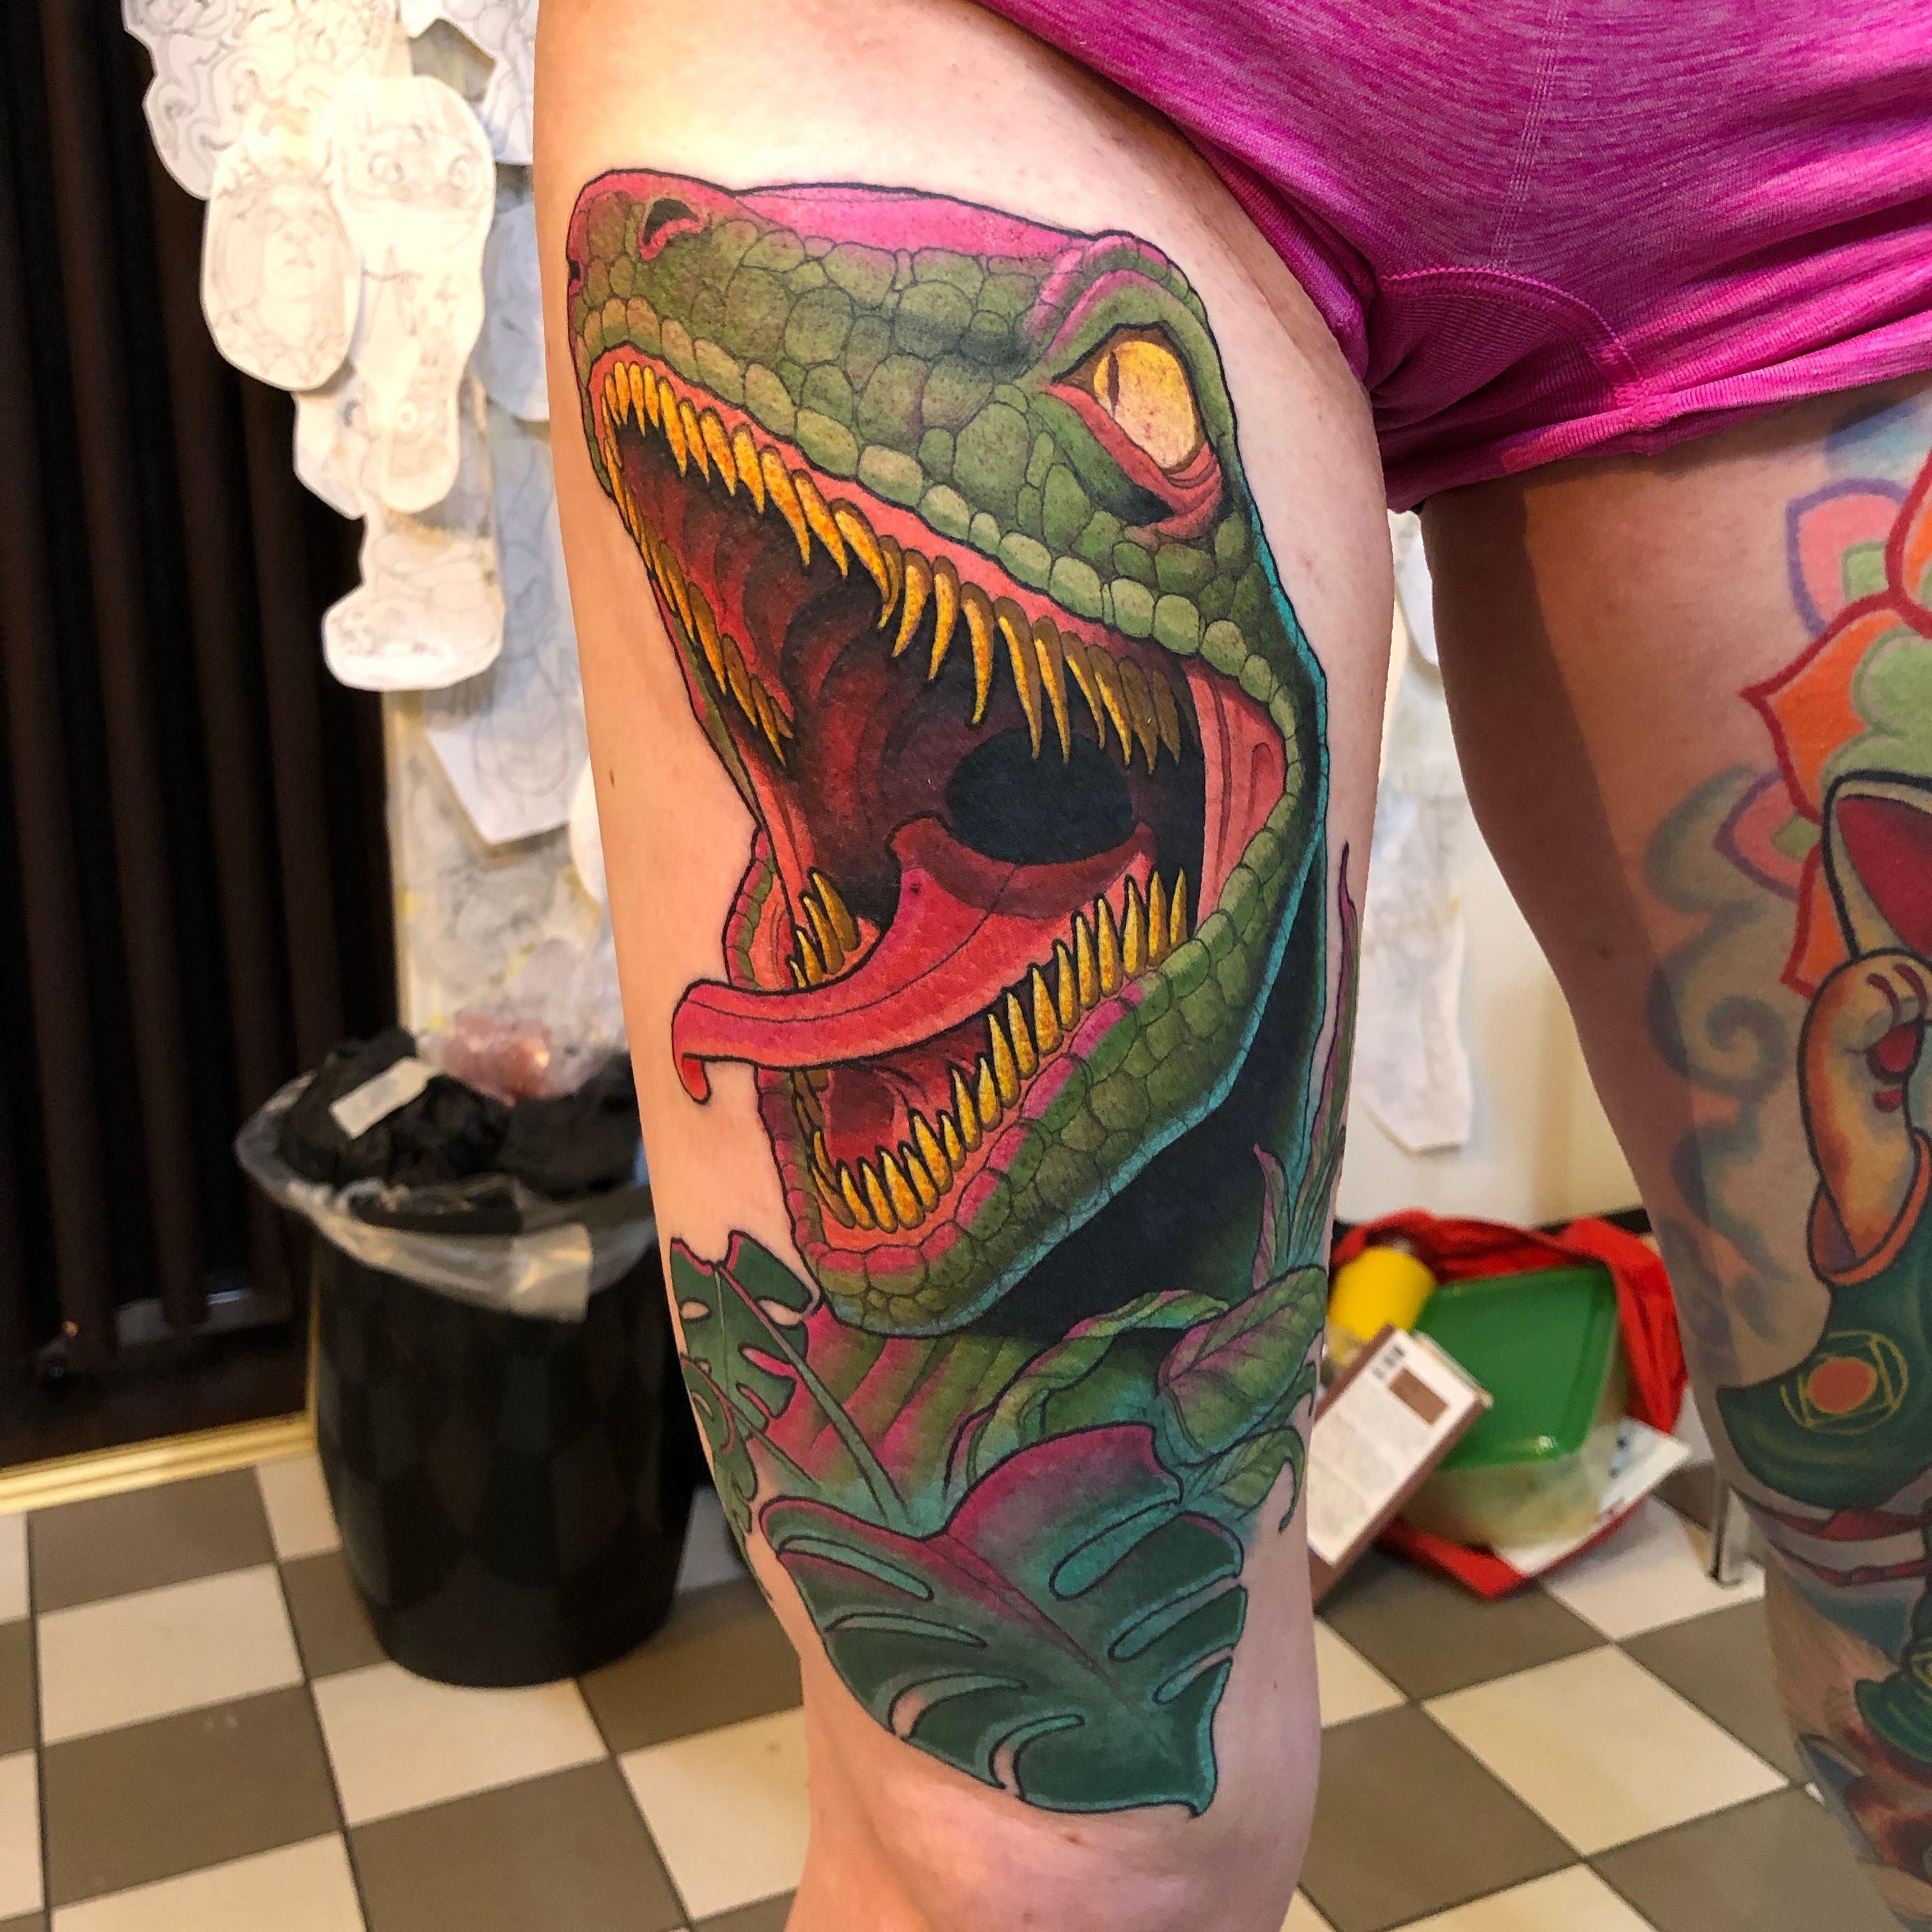 Dinosaur Tattoo In Progress  Remington Tattoo Parlor